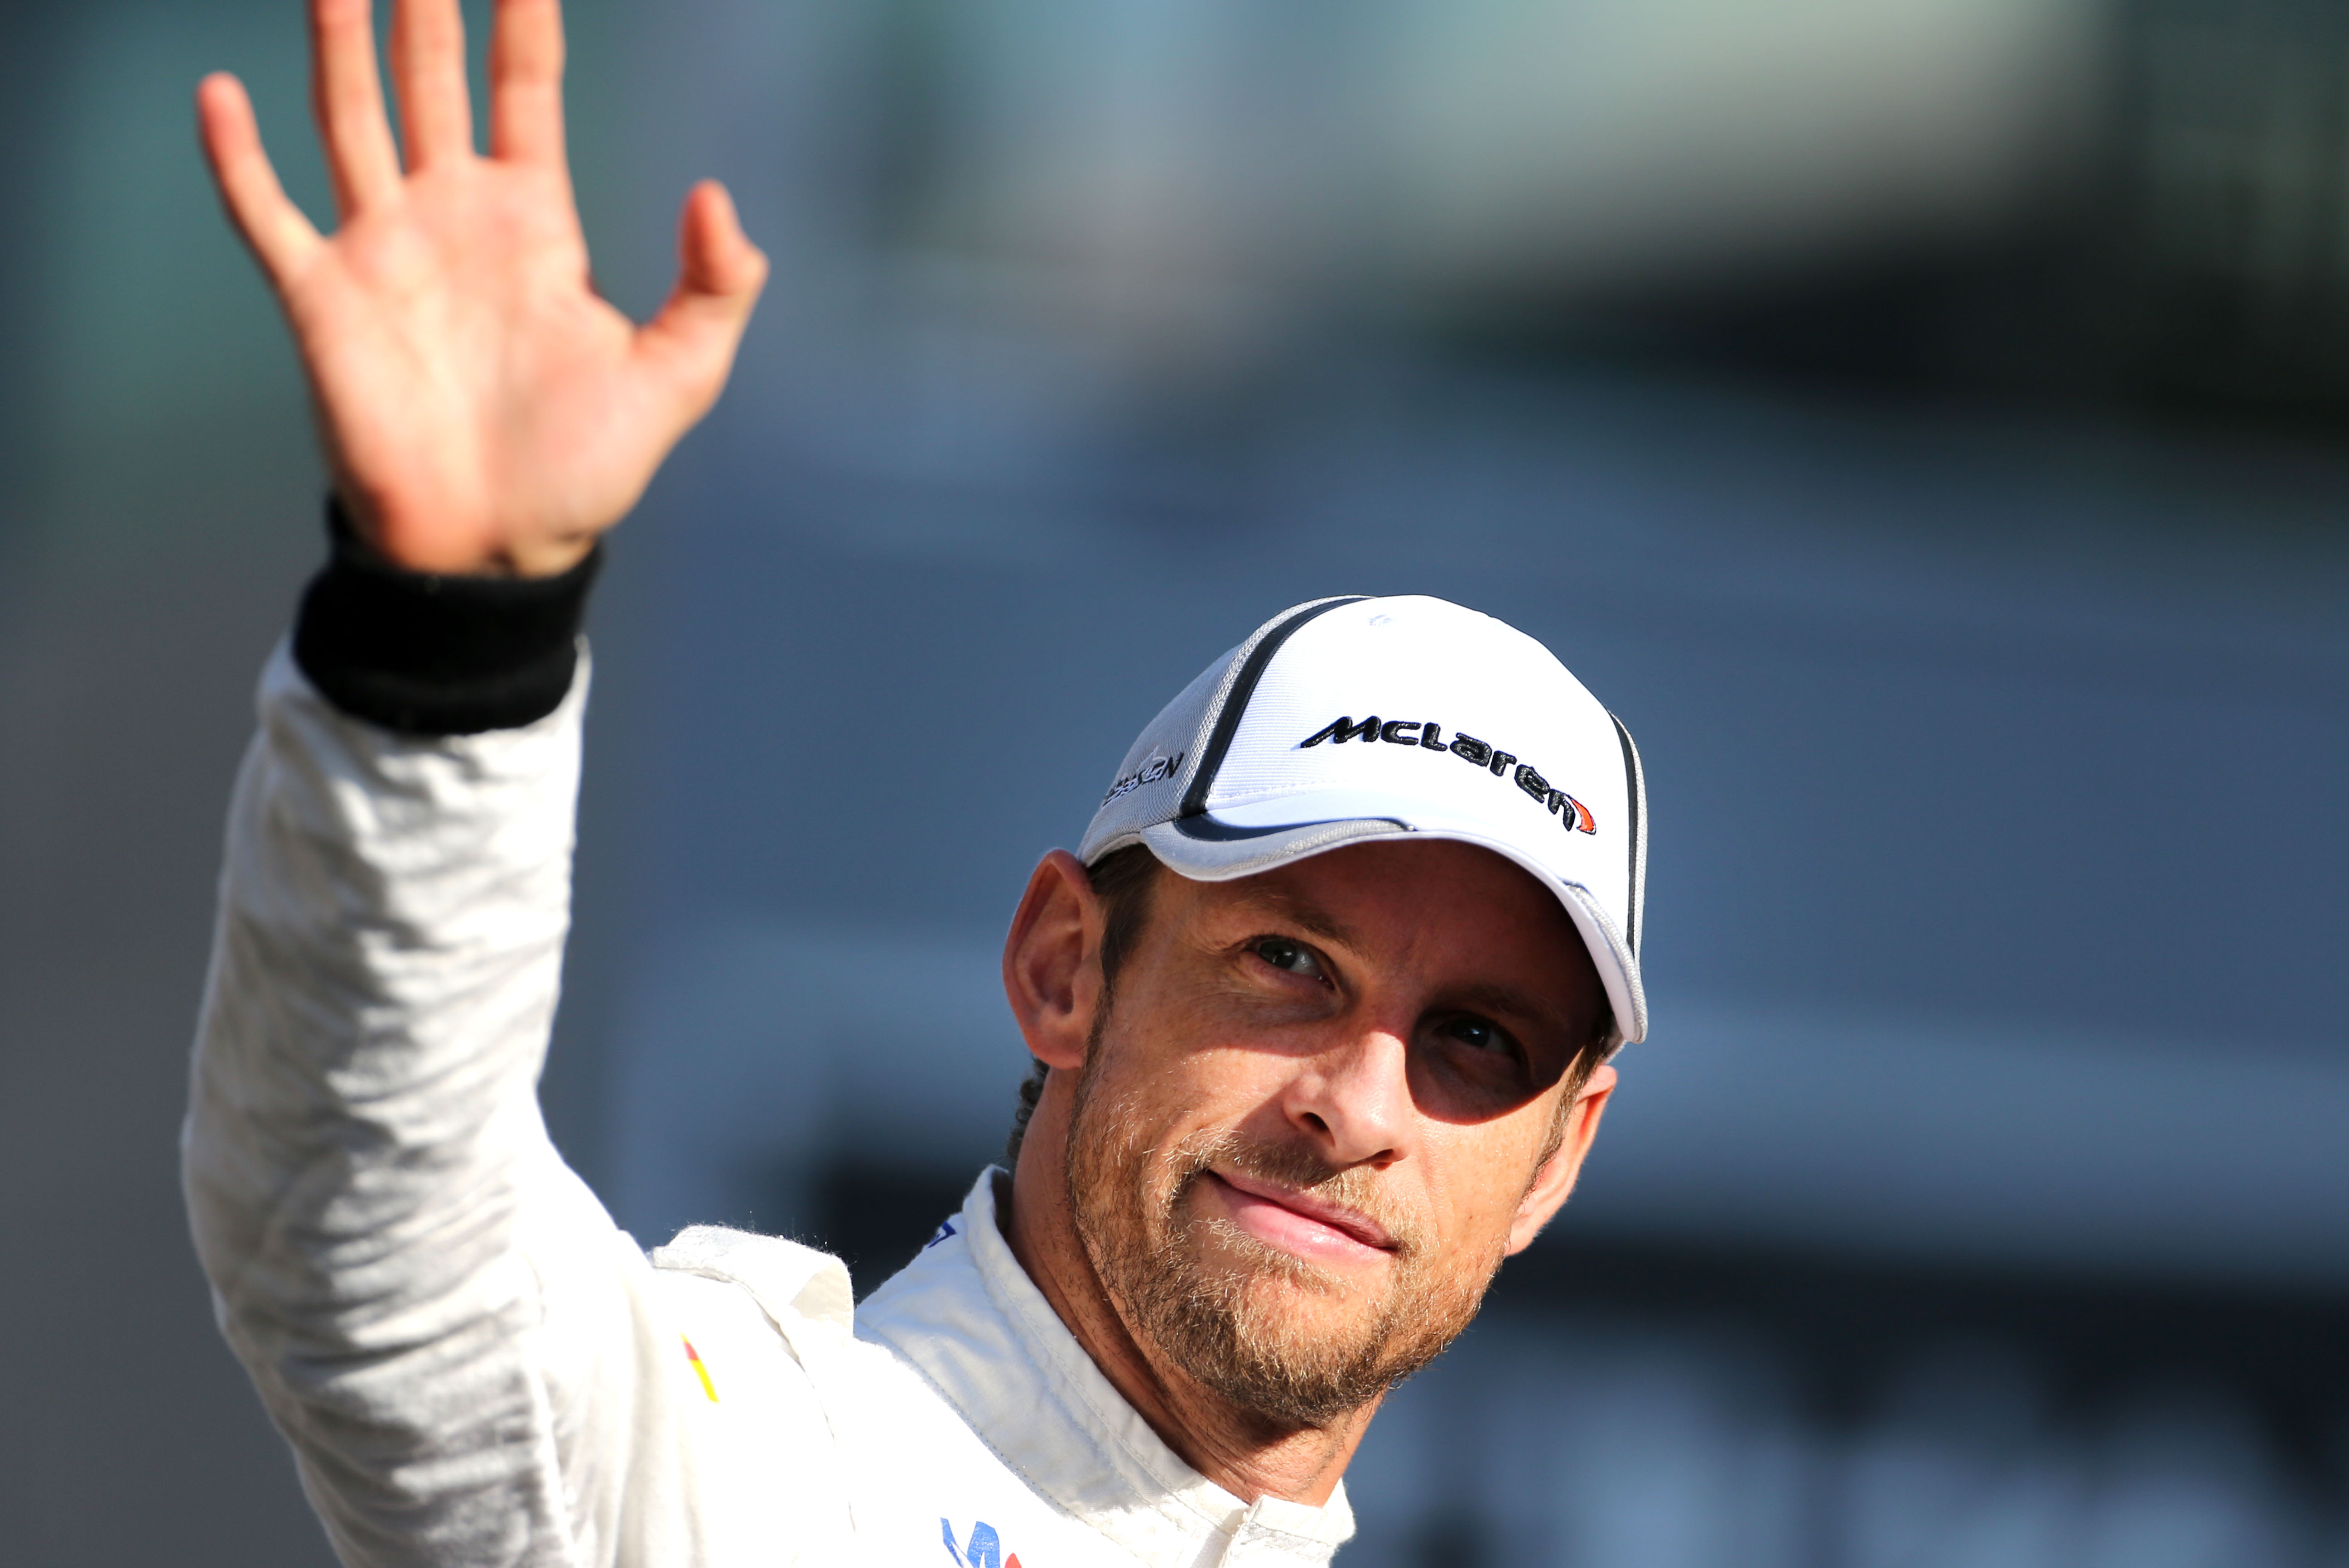 Button is heel blij dat hij bij McLaren mag blijven